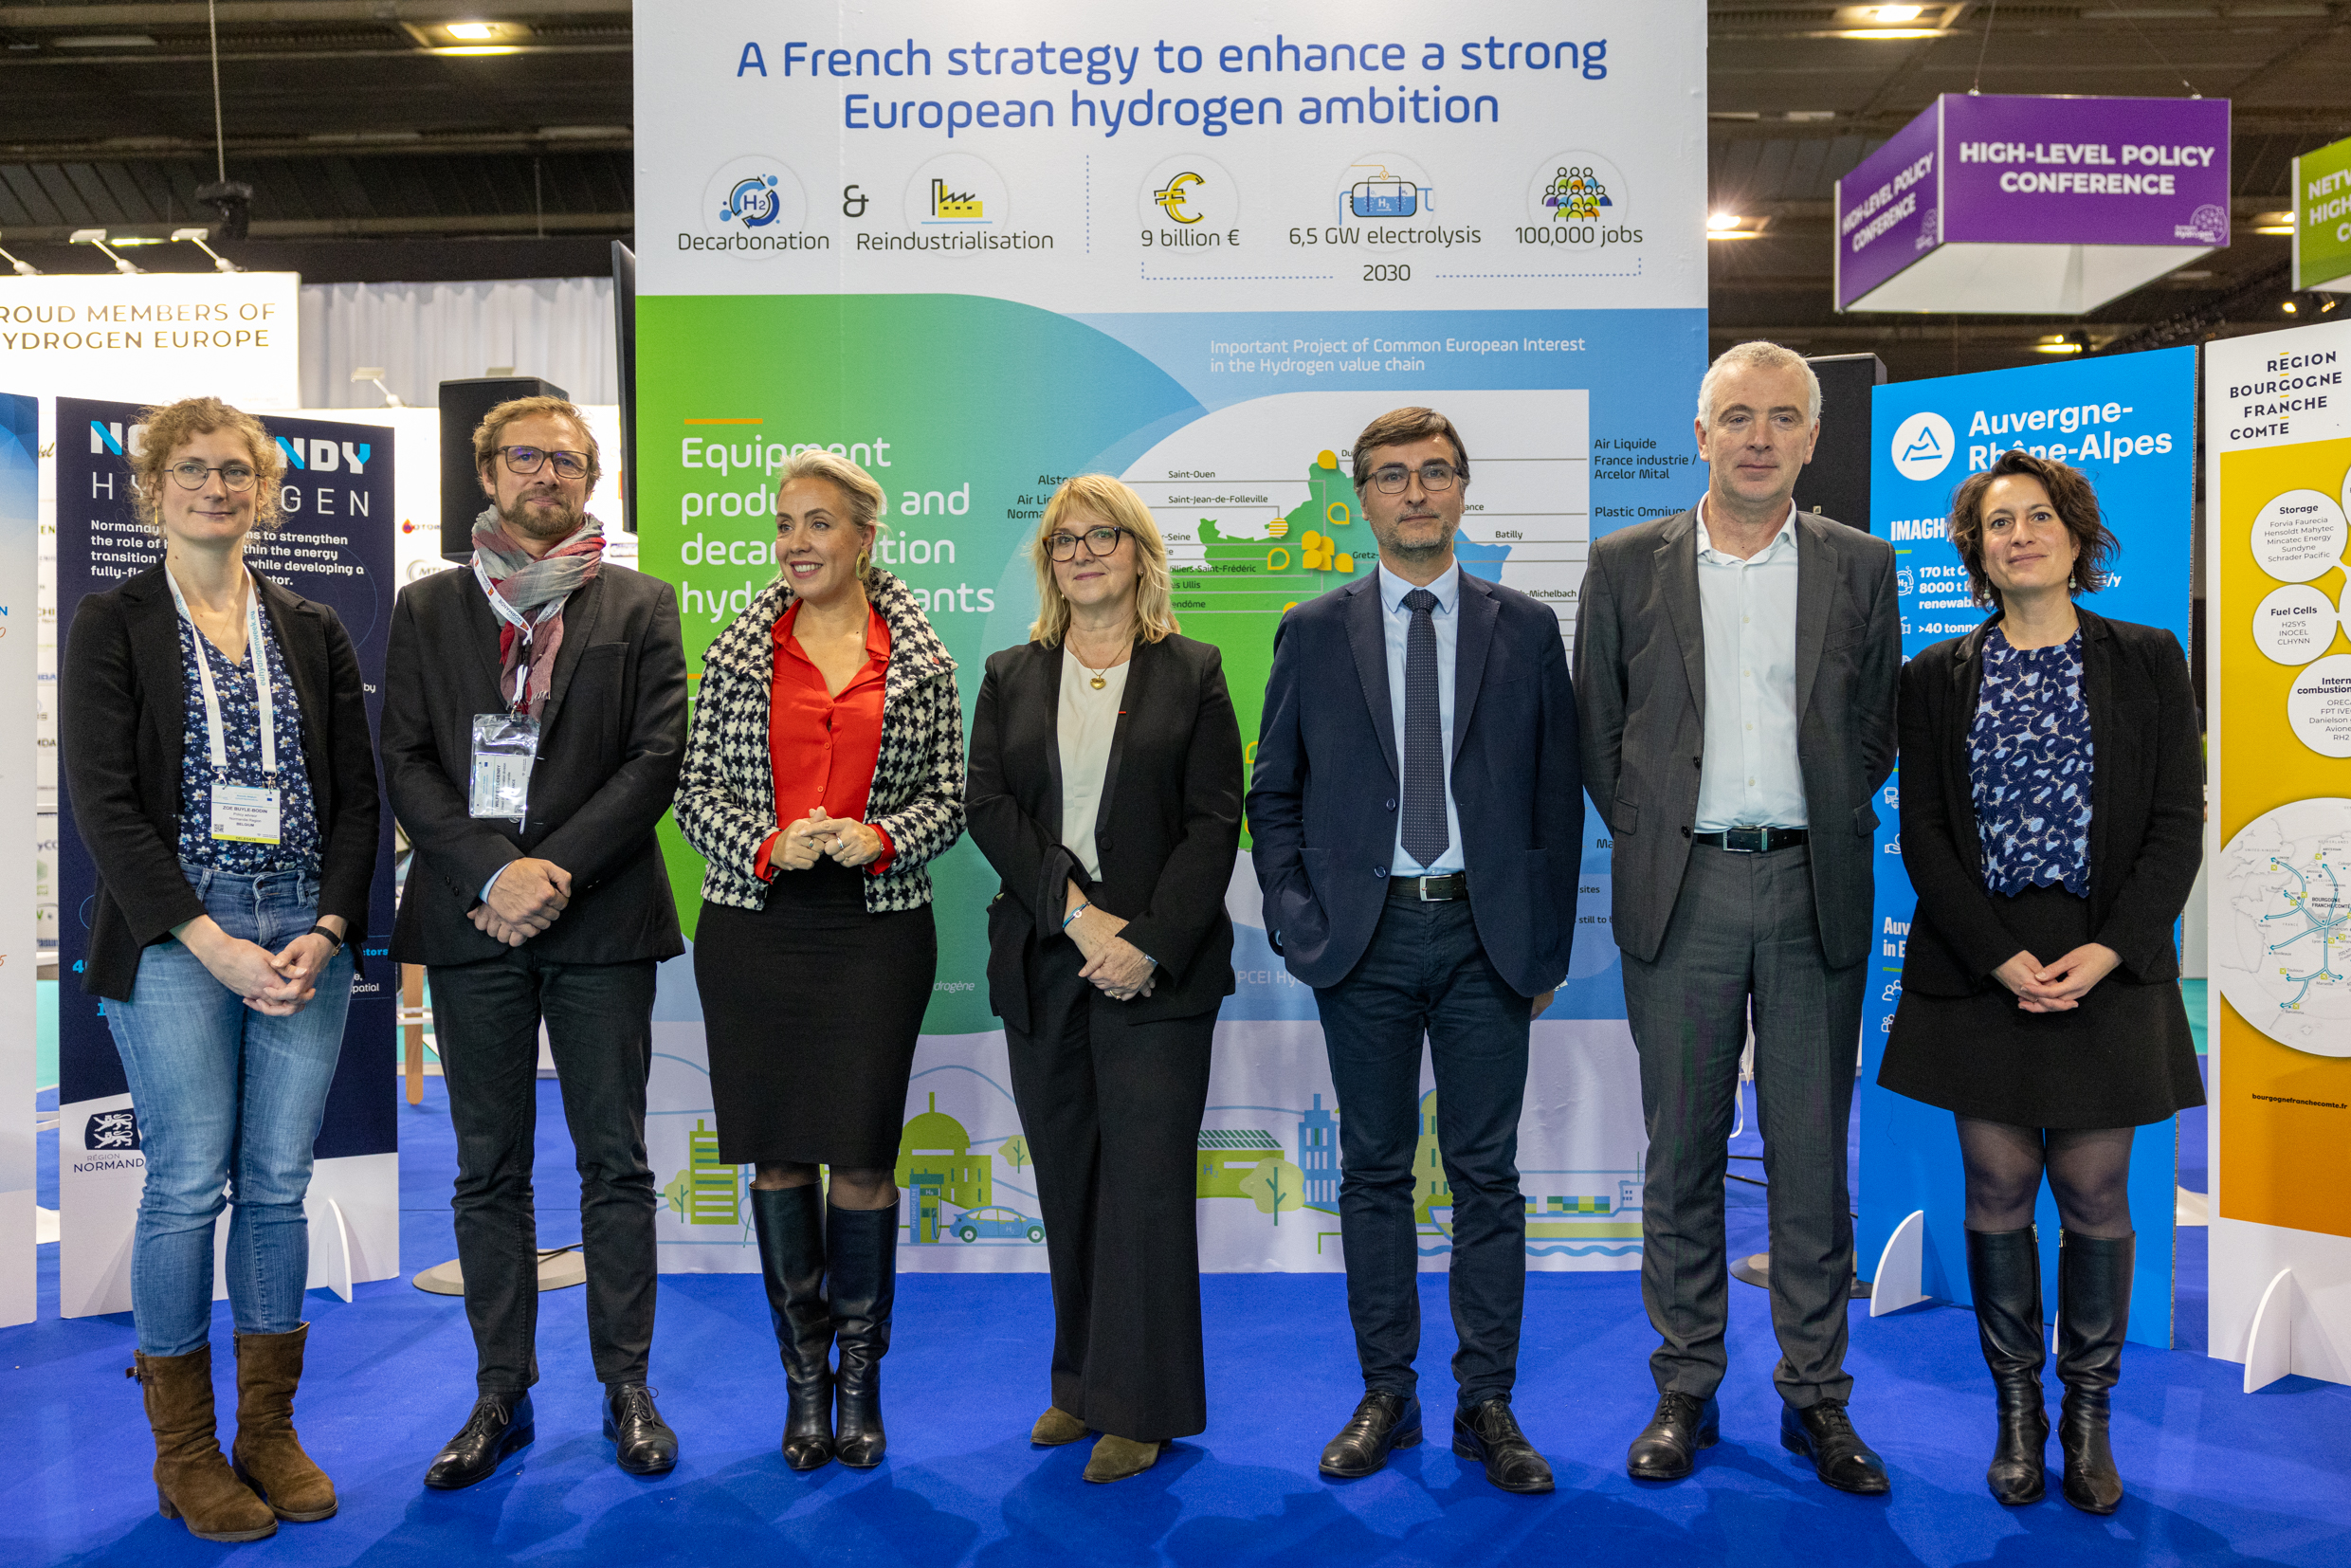 La Bourgogne-Franche-Comté, aux côtés de France Hydrogène et des trois autres régions partenaires de la « European Hydrogen Week ». Photo : Xavier Ducordeaux.